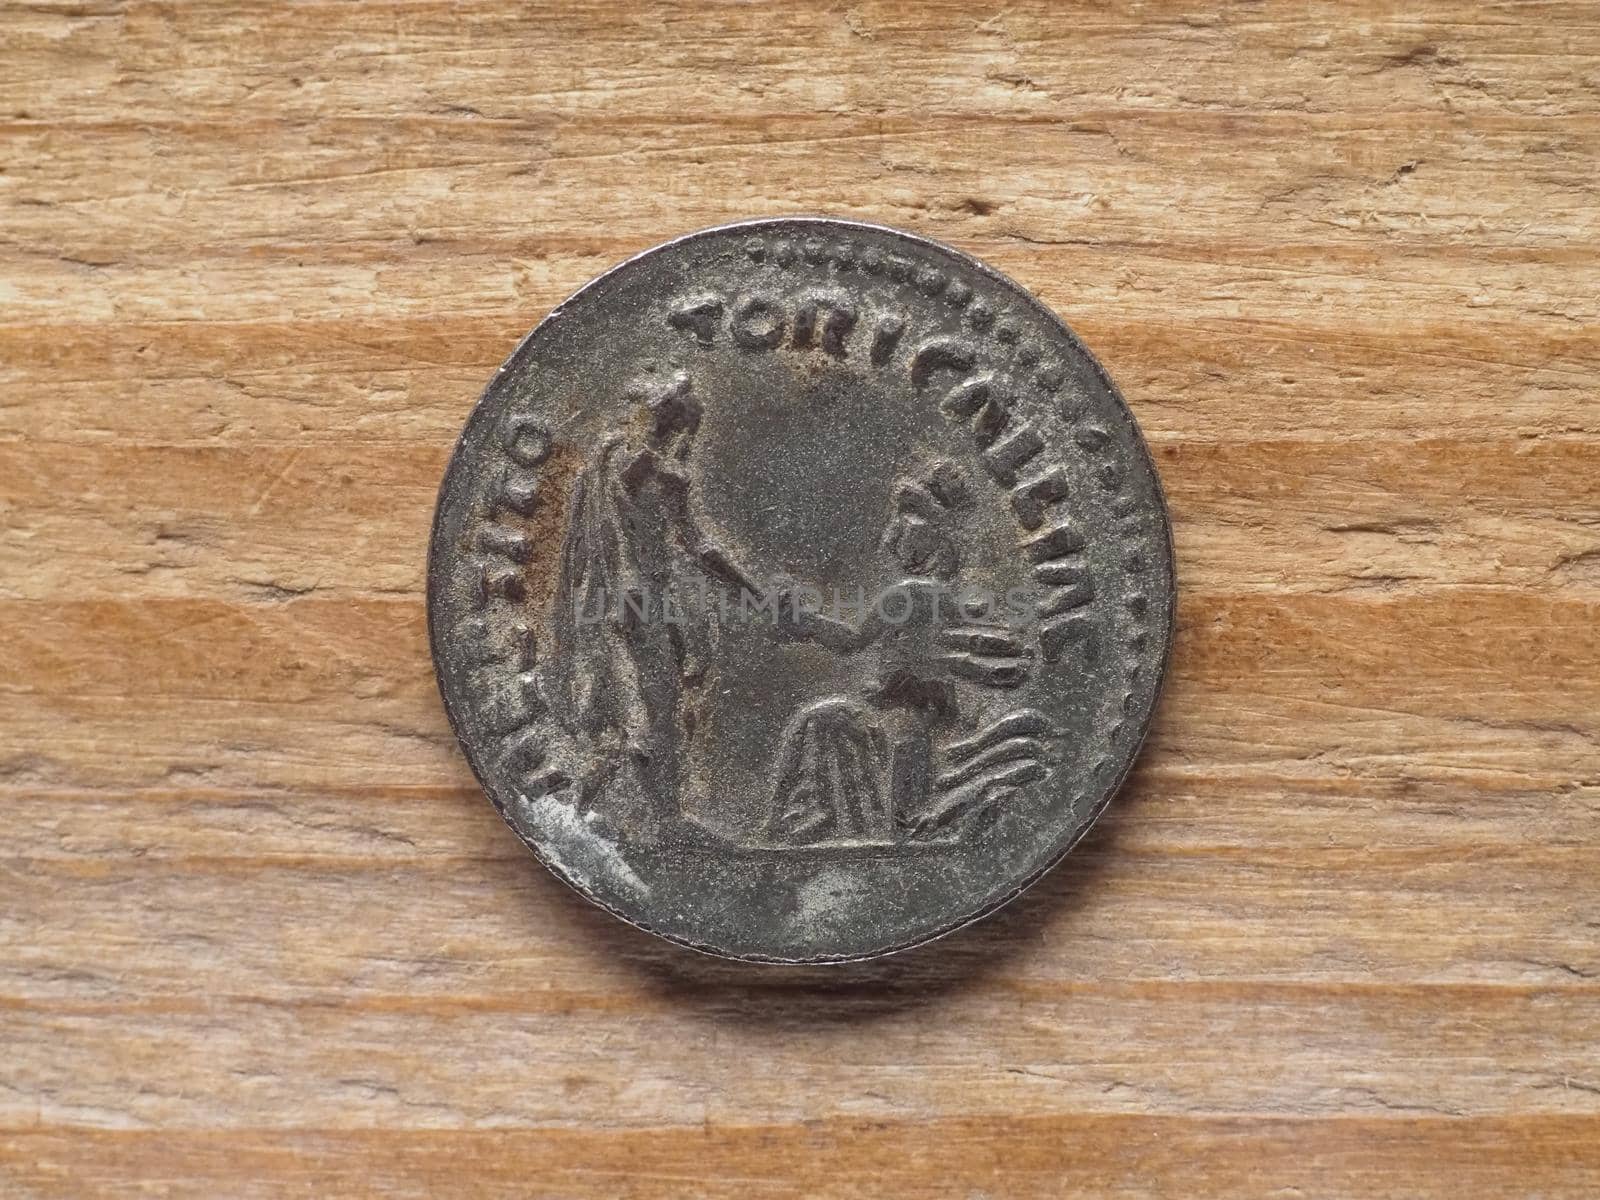 Ancient Roman denarius coin reverse side showing restoration of Gaul by emperor Hadrian circa 130 bC